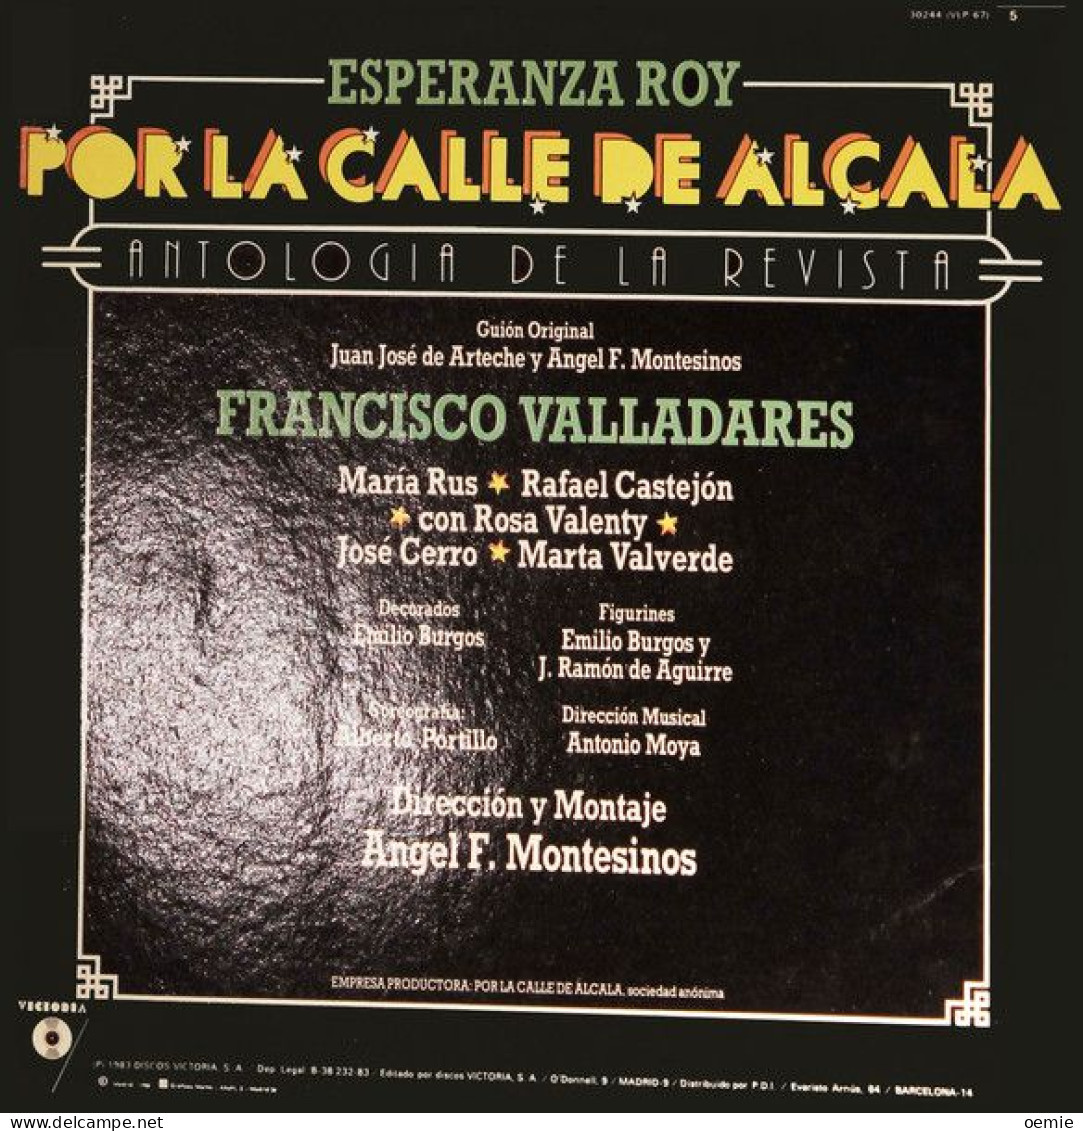 ANTOLOGIA DE LA REVISTA  ESPERANZA ROY  POR LA CALLE DE ALCALA  FRANCISCO VALLADARES - Other - Spanish Music